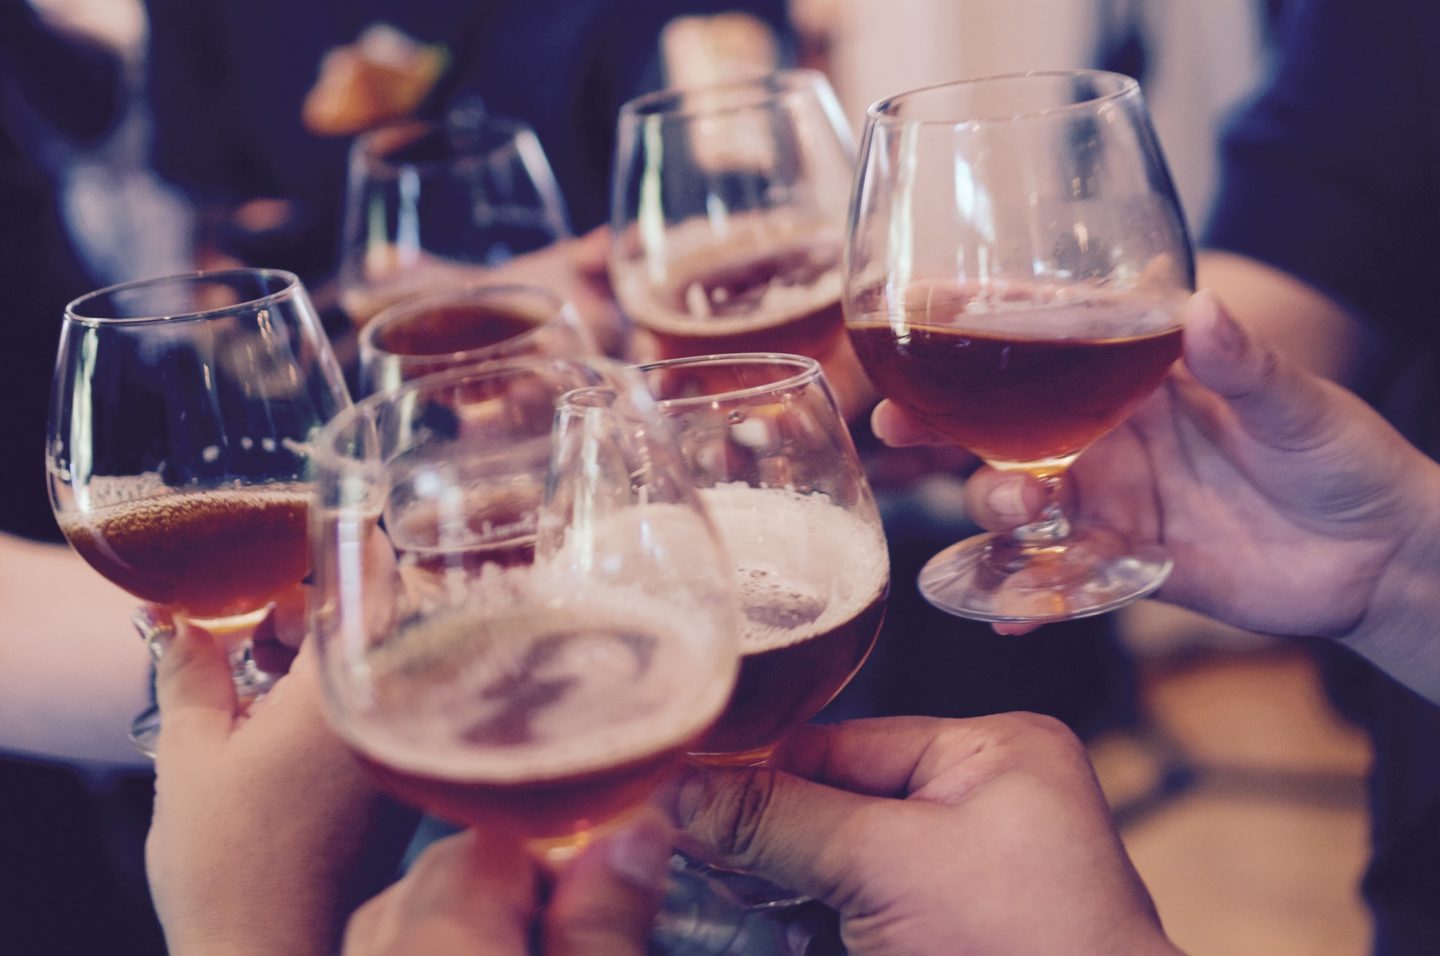 Cerveja aumenta chance de contrair covid-19 e vinho diminui, aponta estudo